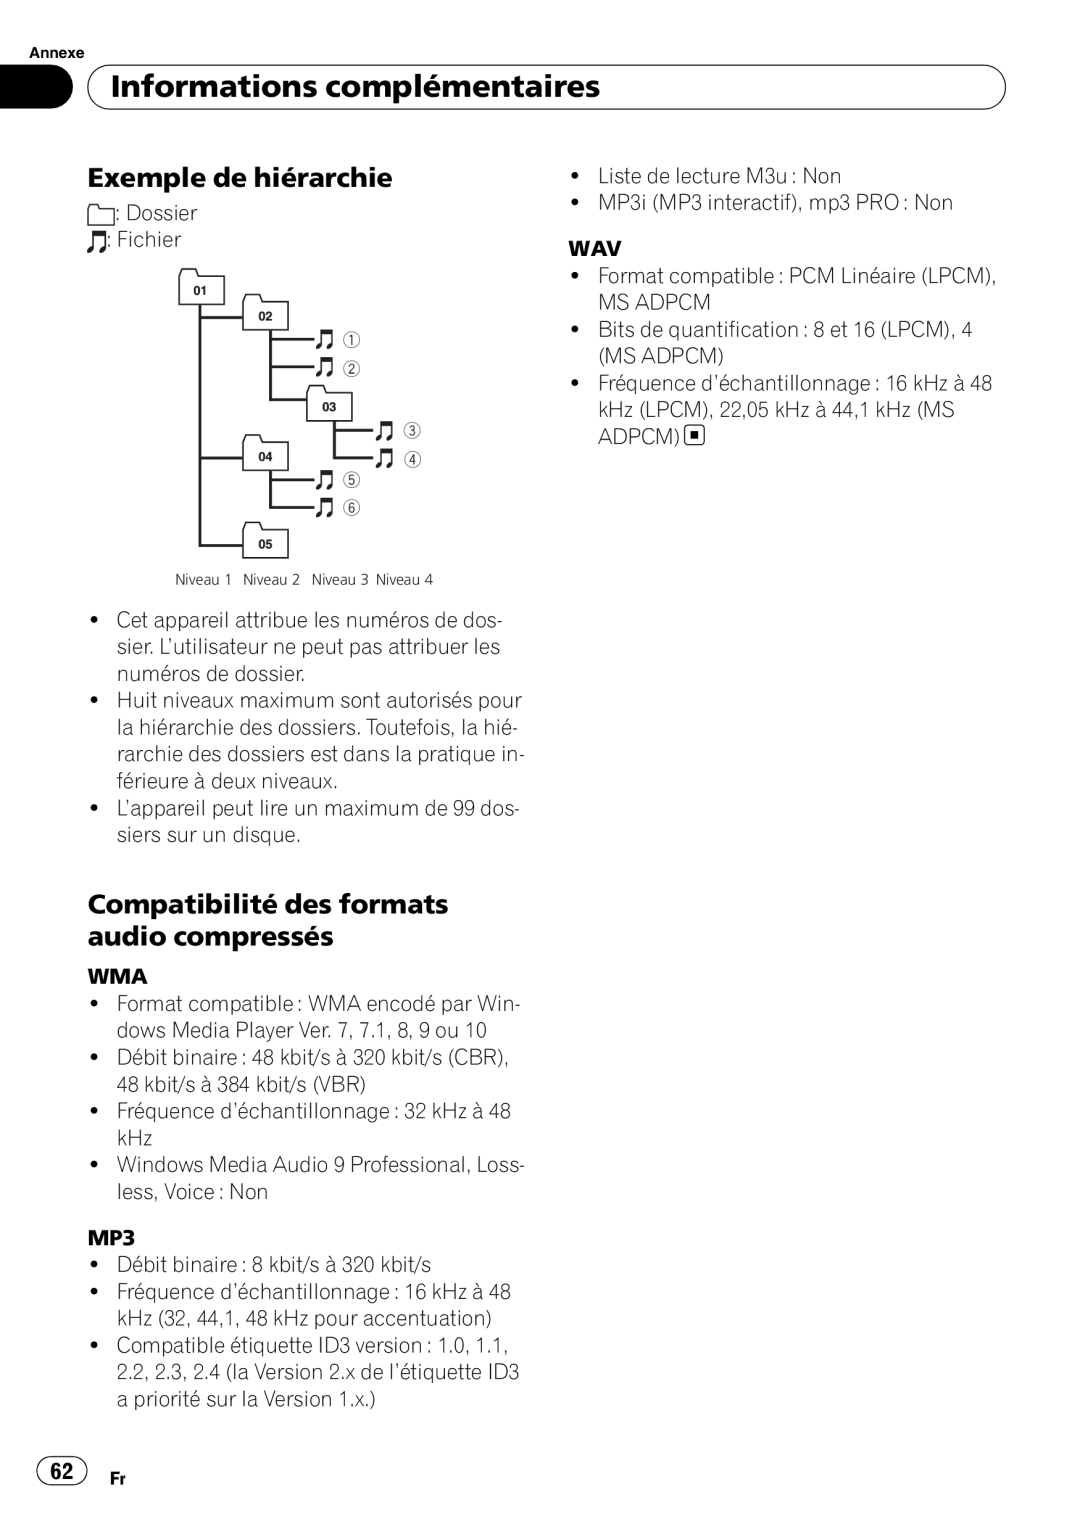 Sony DEH-P2900MP Exemple de hiérarchie, Compatibilité des formats audio compressés, Informations complémentaires 